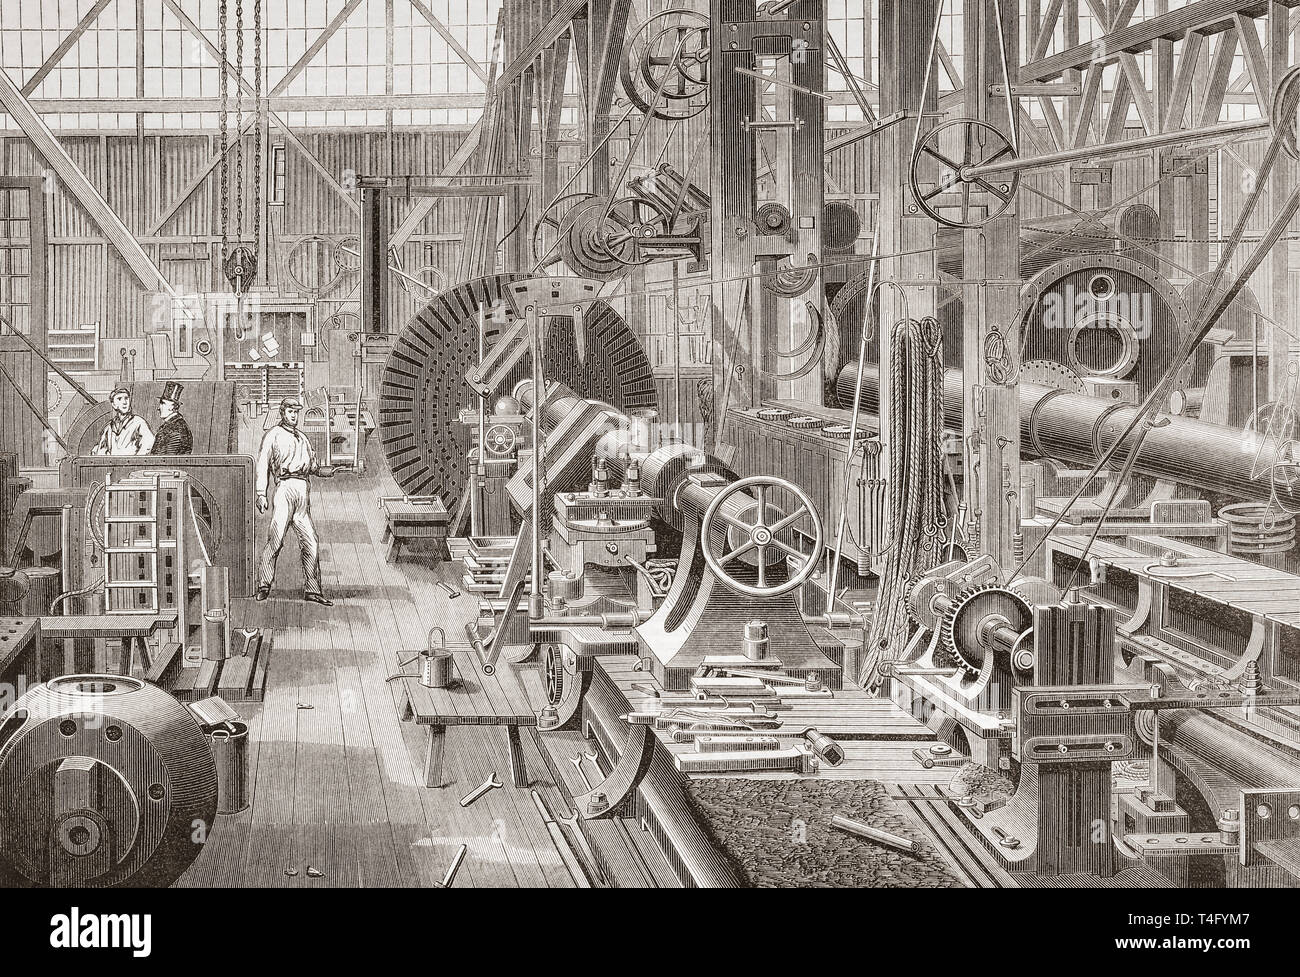 Penn's Marine Motor Factory, Greenwich, London, England, 19. Drehen einer Kurbel Achse. Von der Illustrated London News, veröffentlicht 1865. Stockfoto